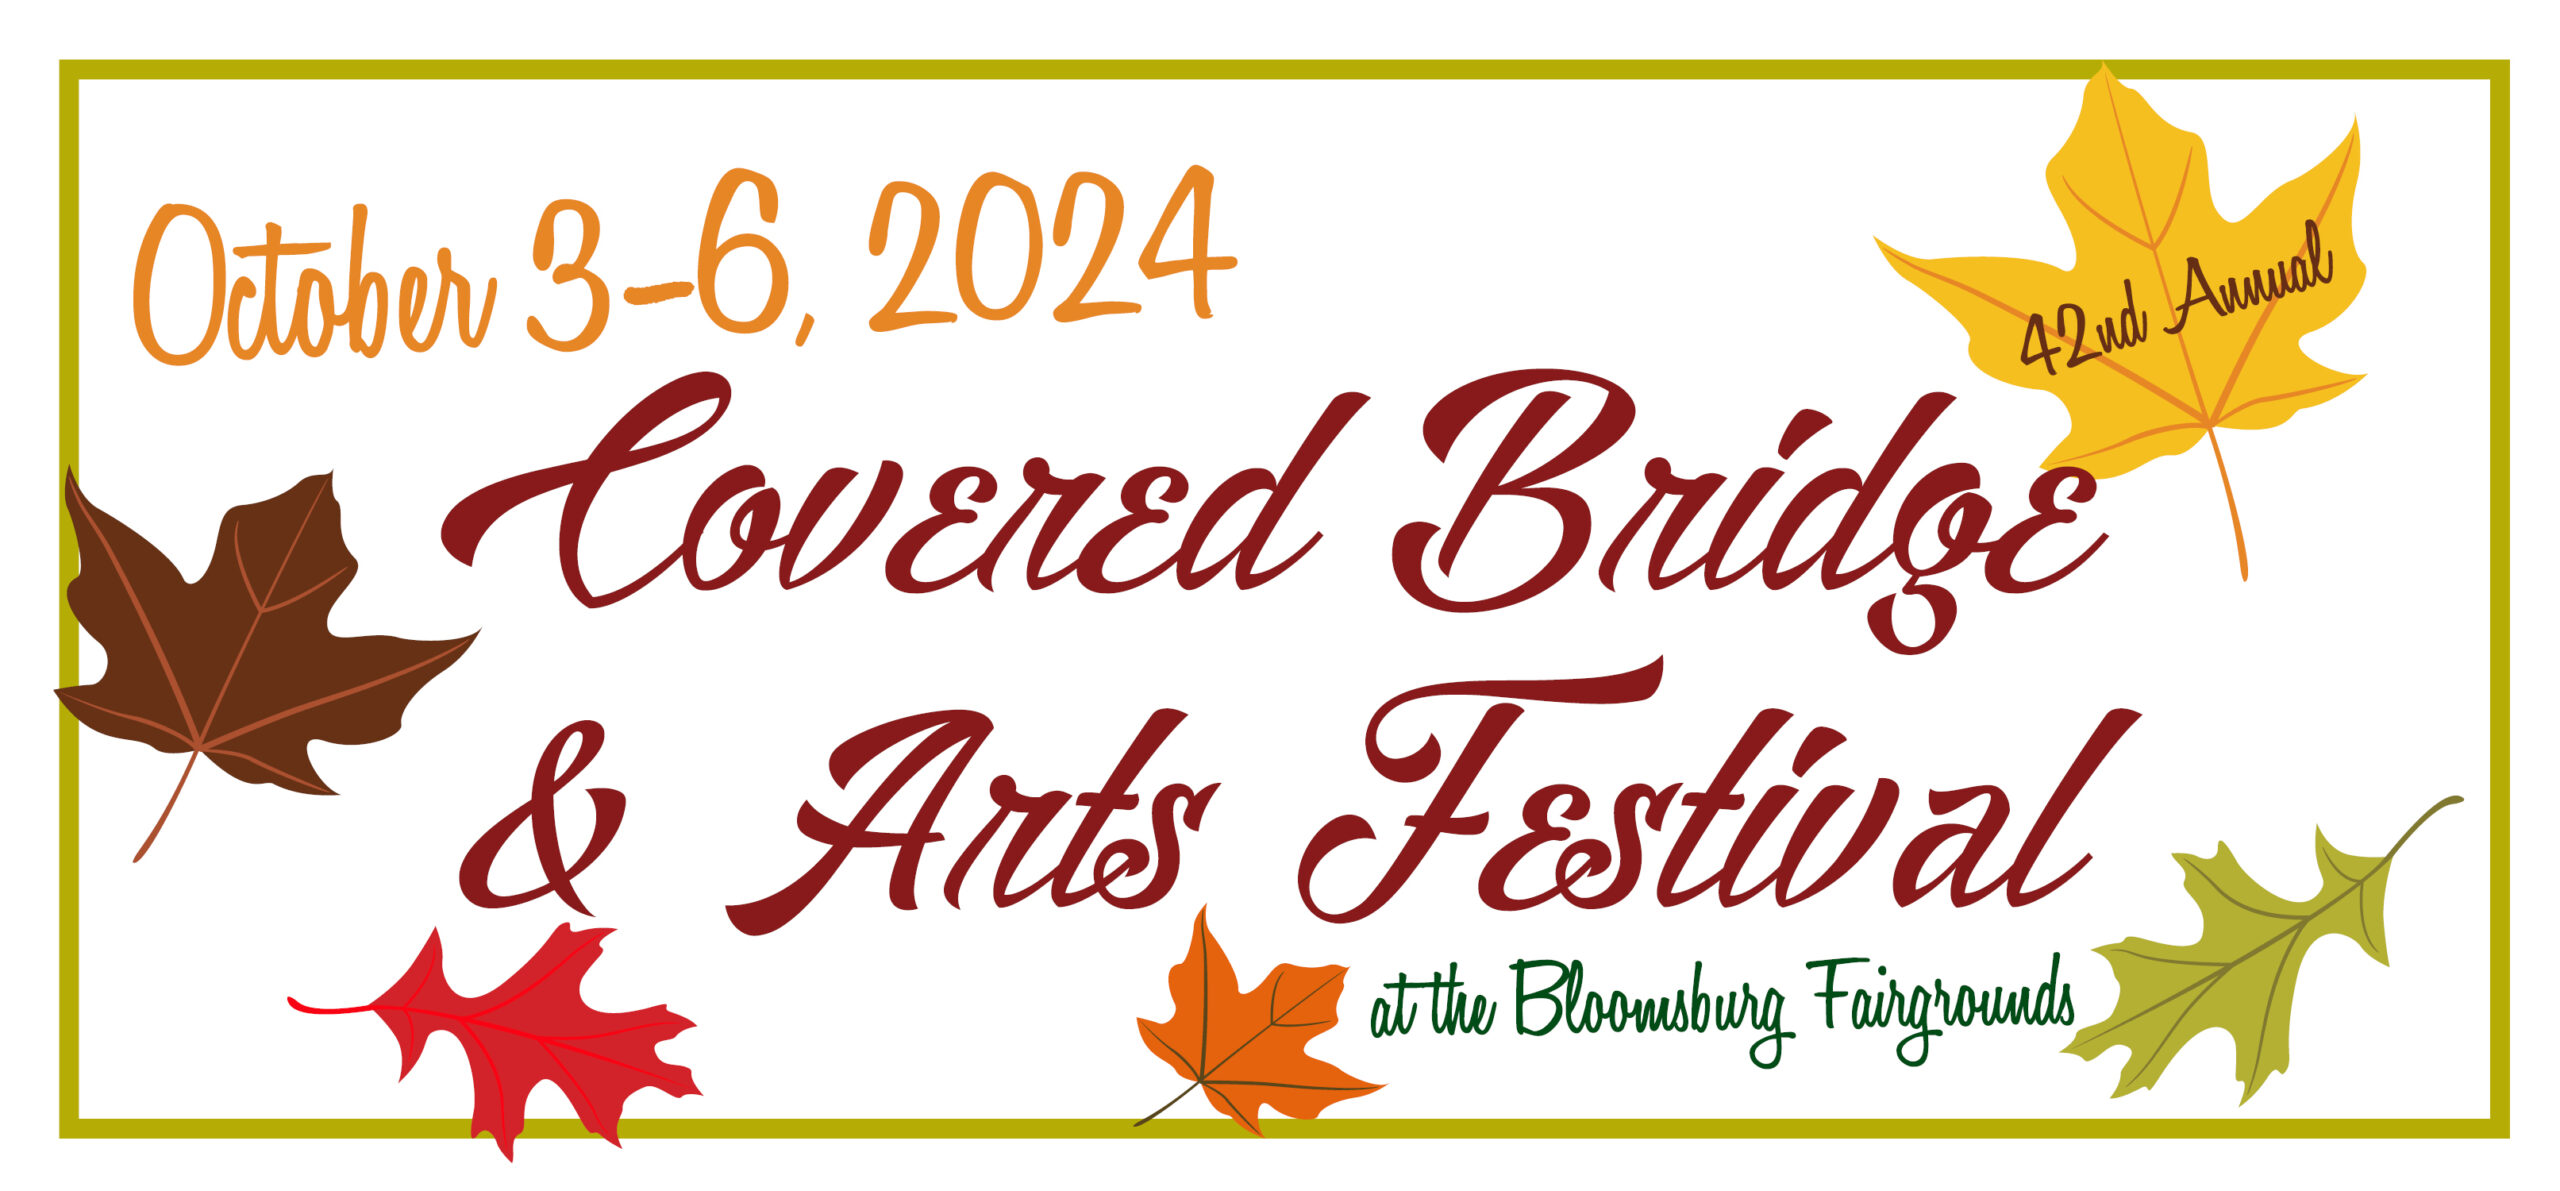 2024 Elysburg Covered Bridge Festival